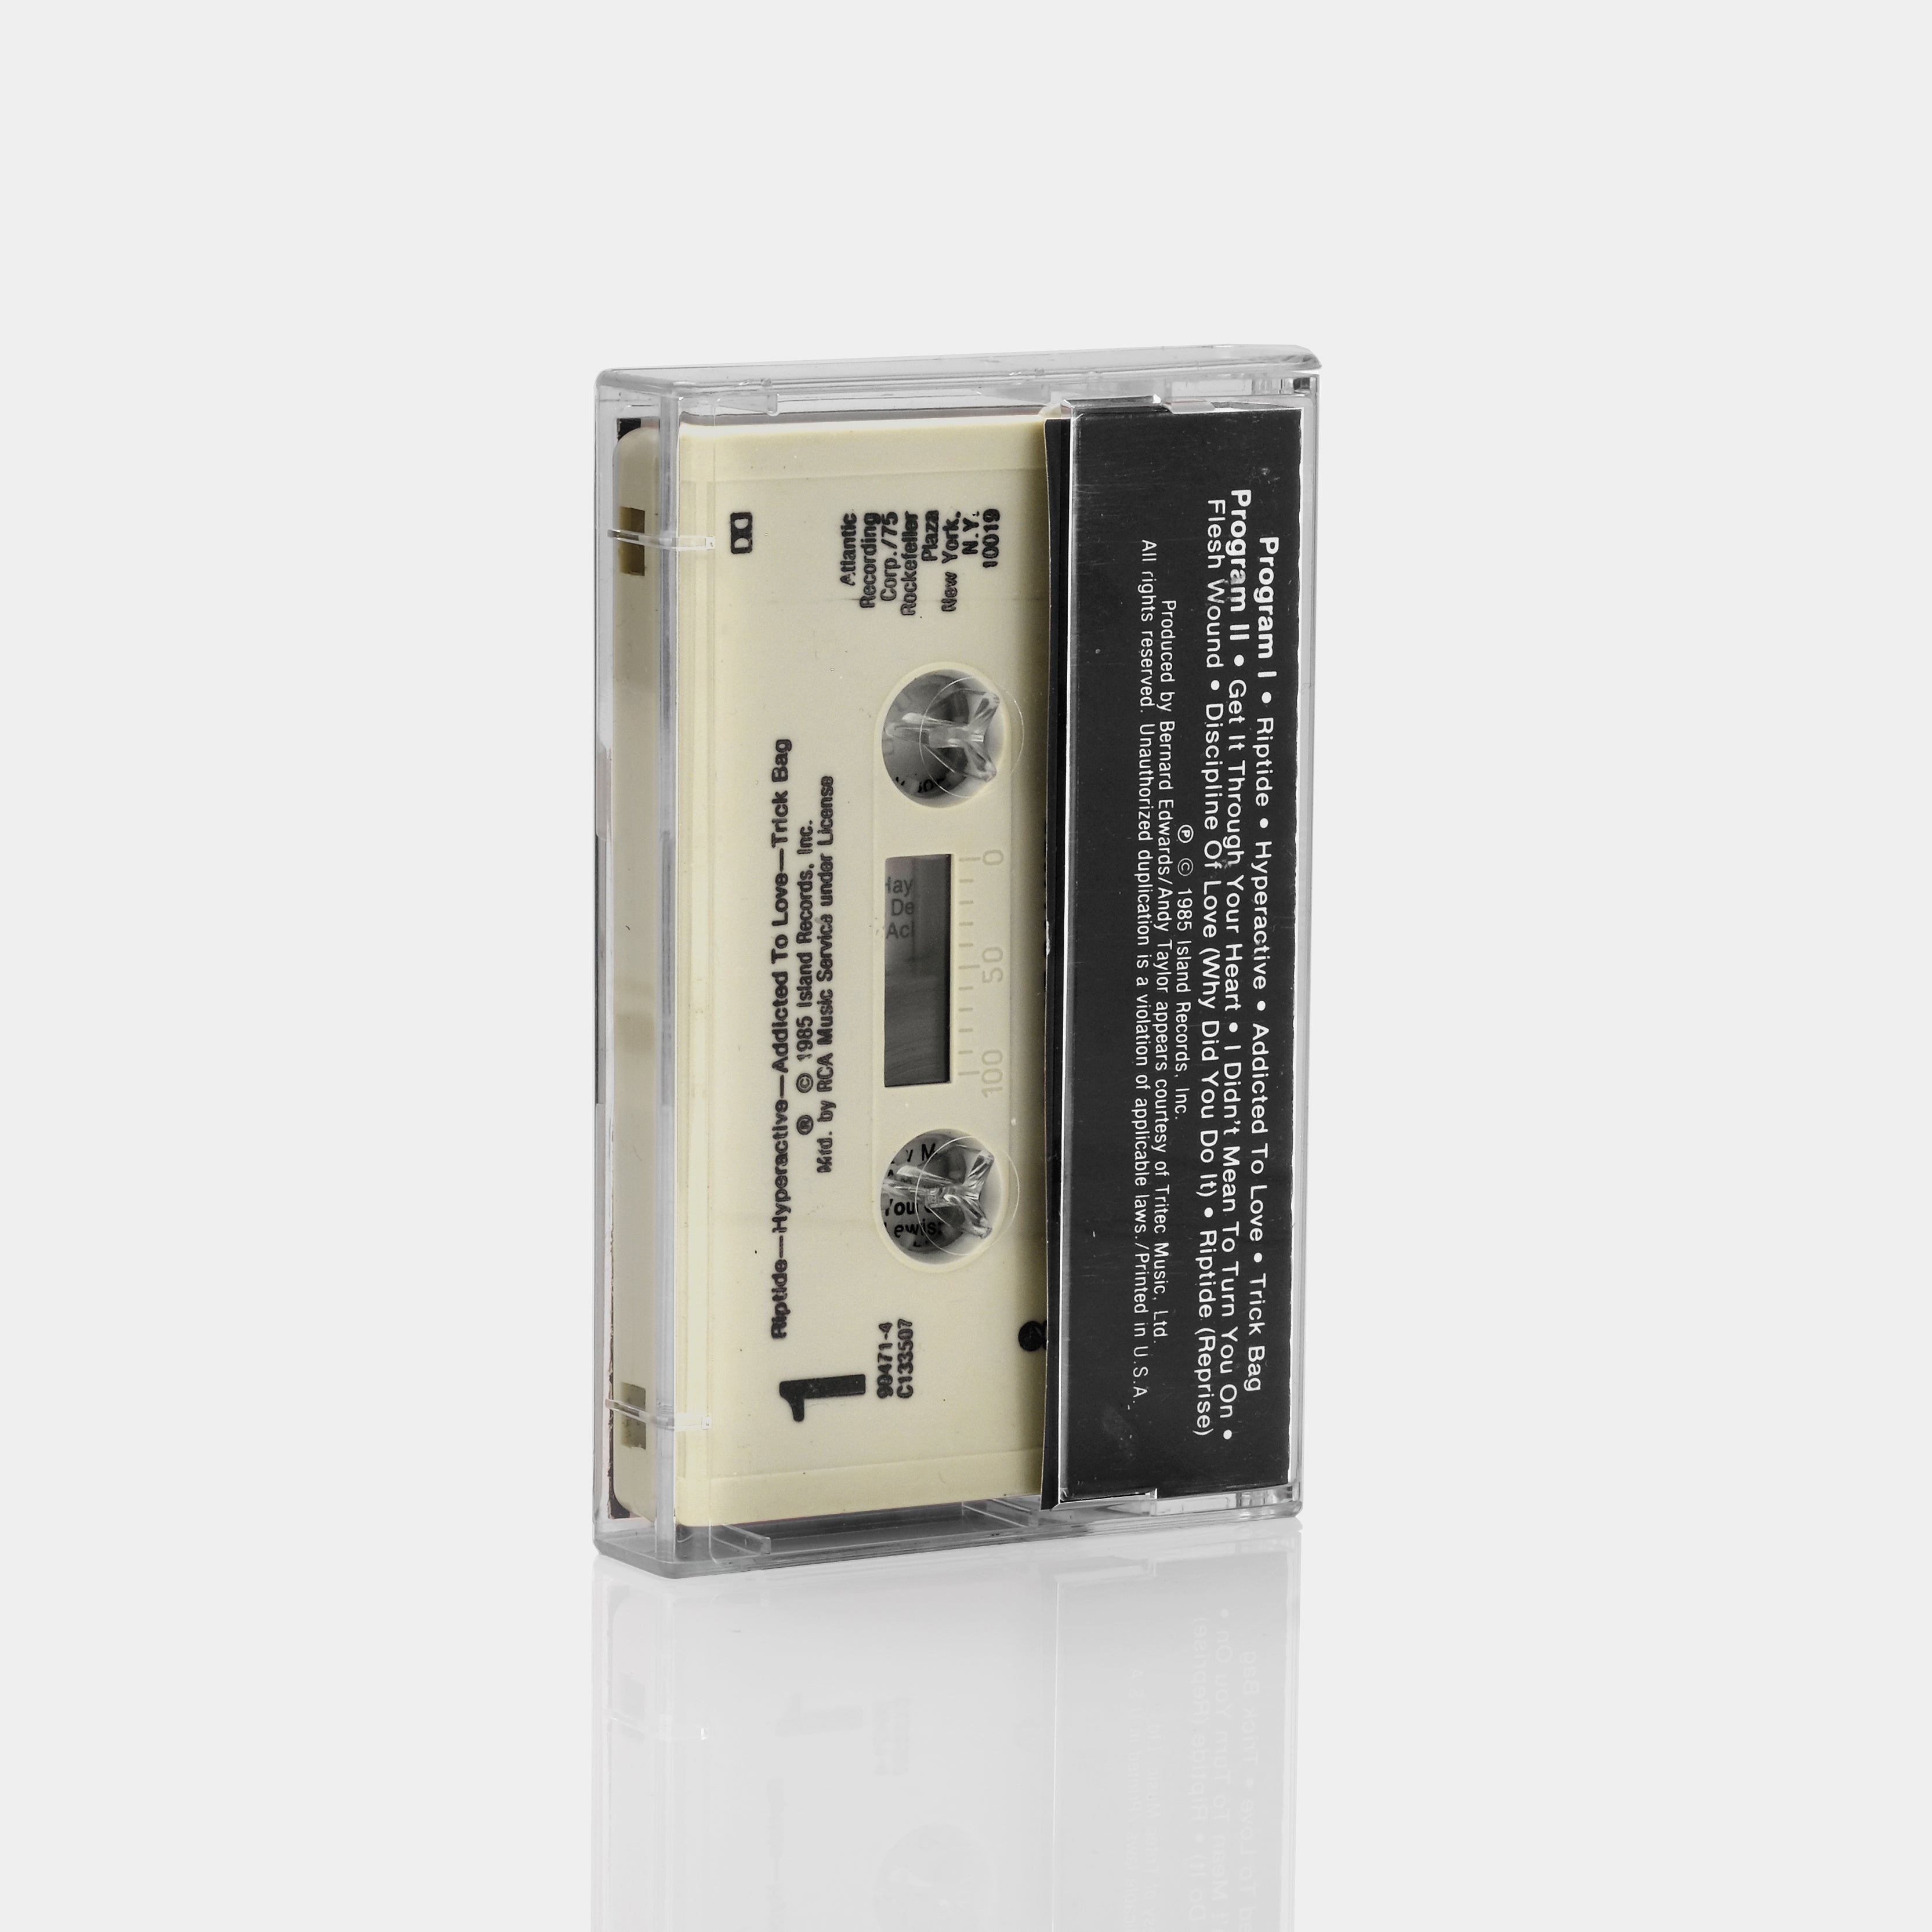 Robert Palmer - Riptide Cassette Tape